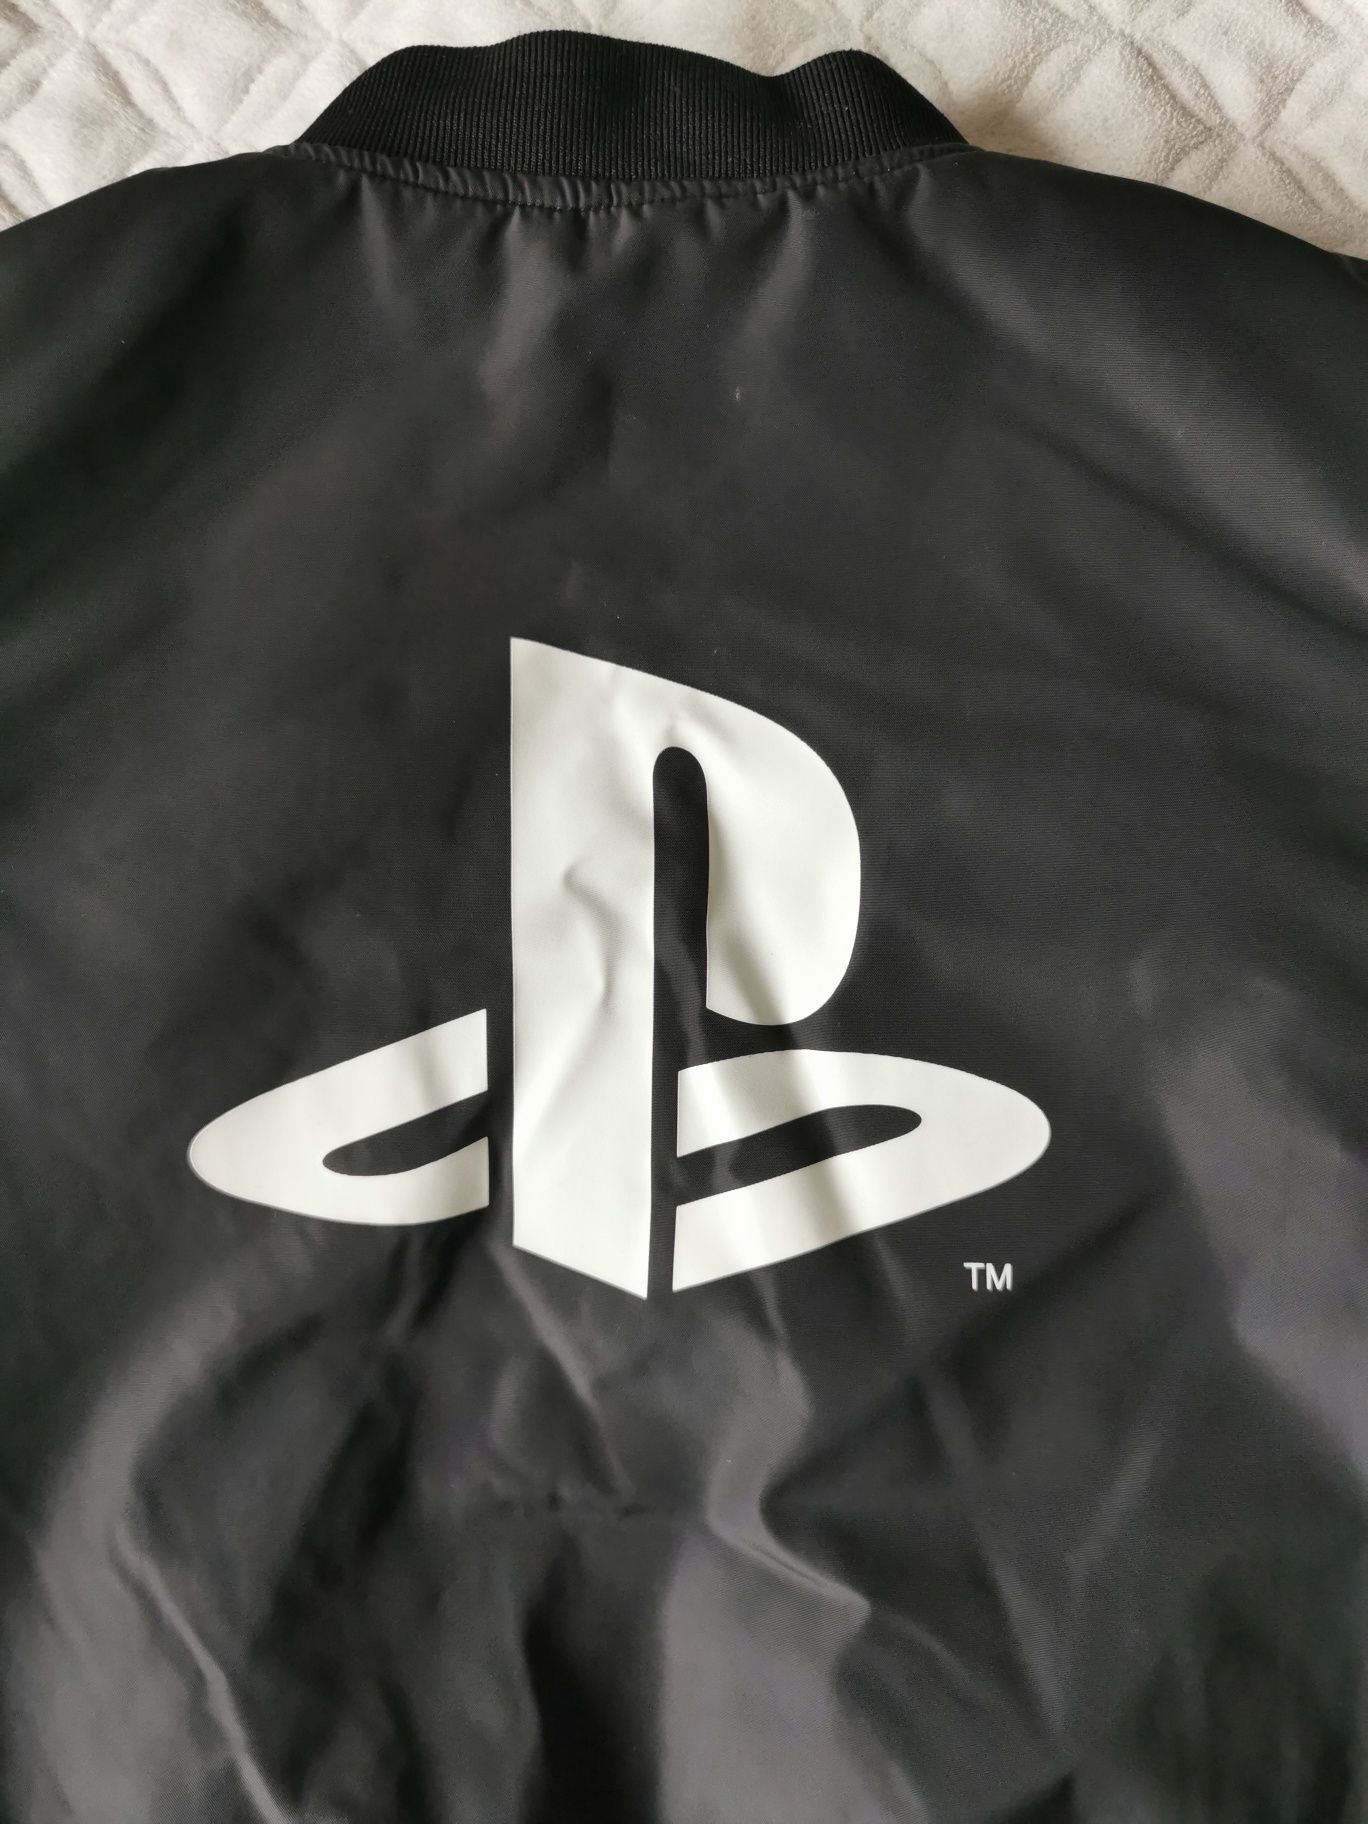 H&M kurtka Ps4 dla fanów konsoli gier i Sony rozmiar 158/164